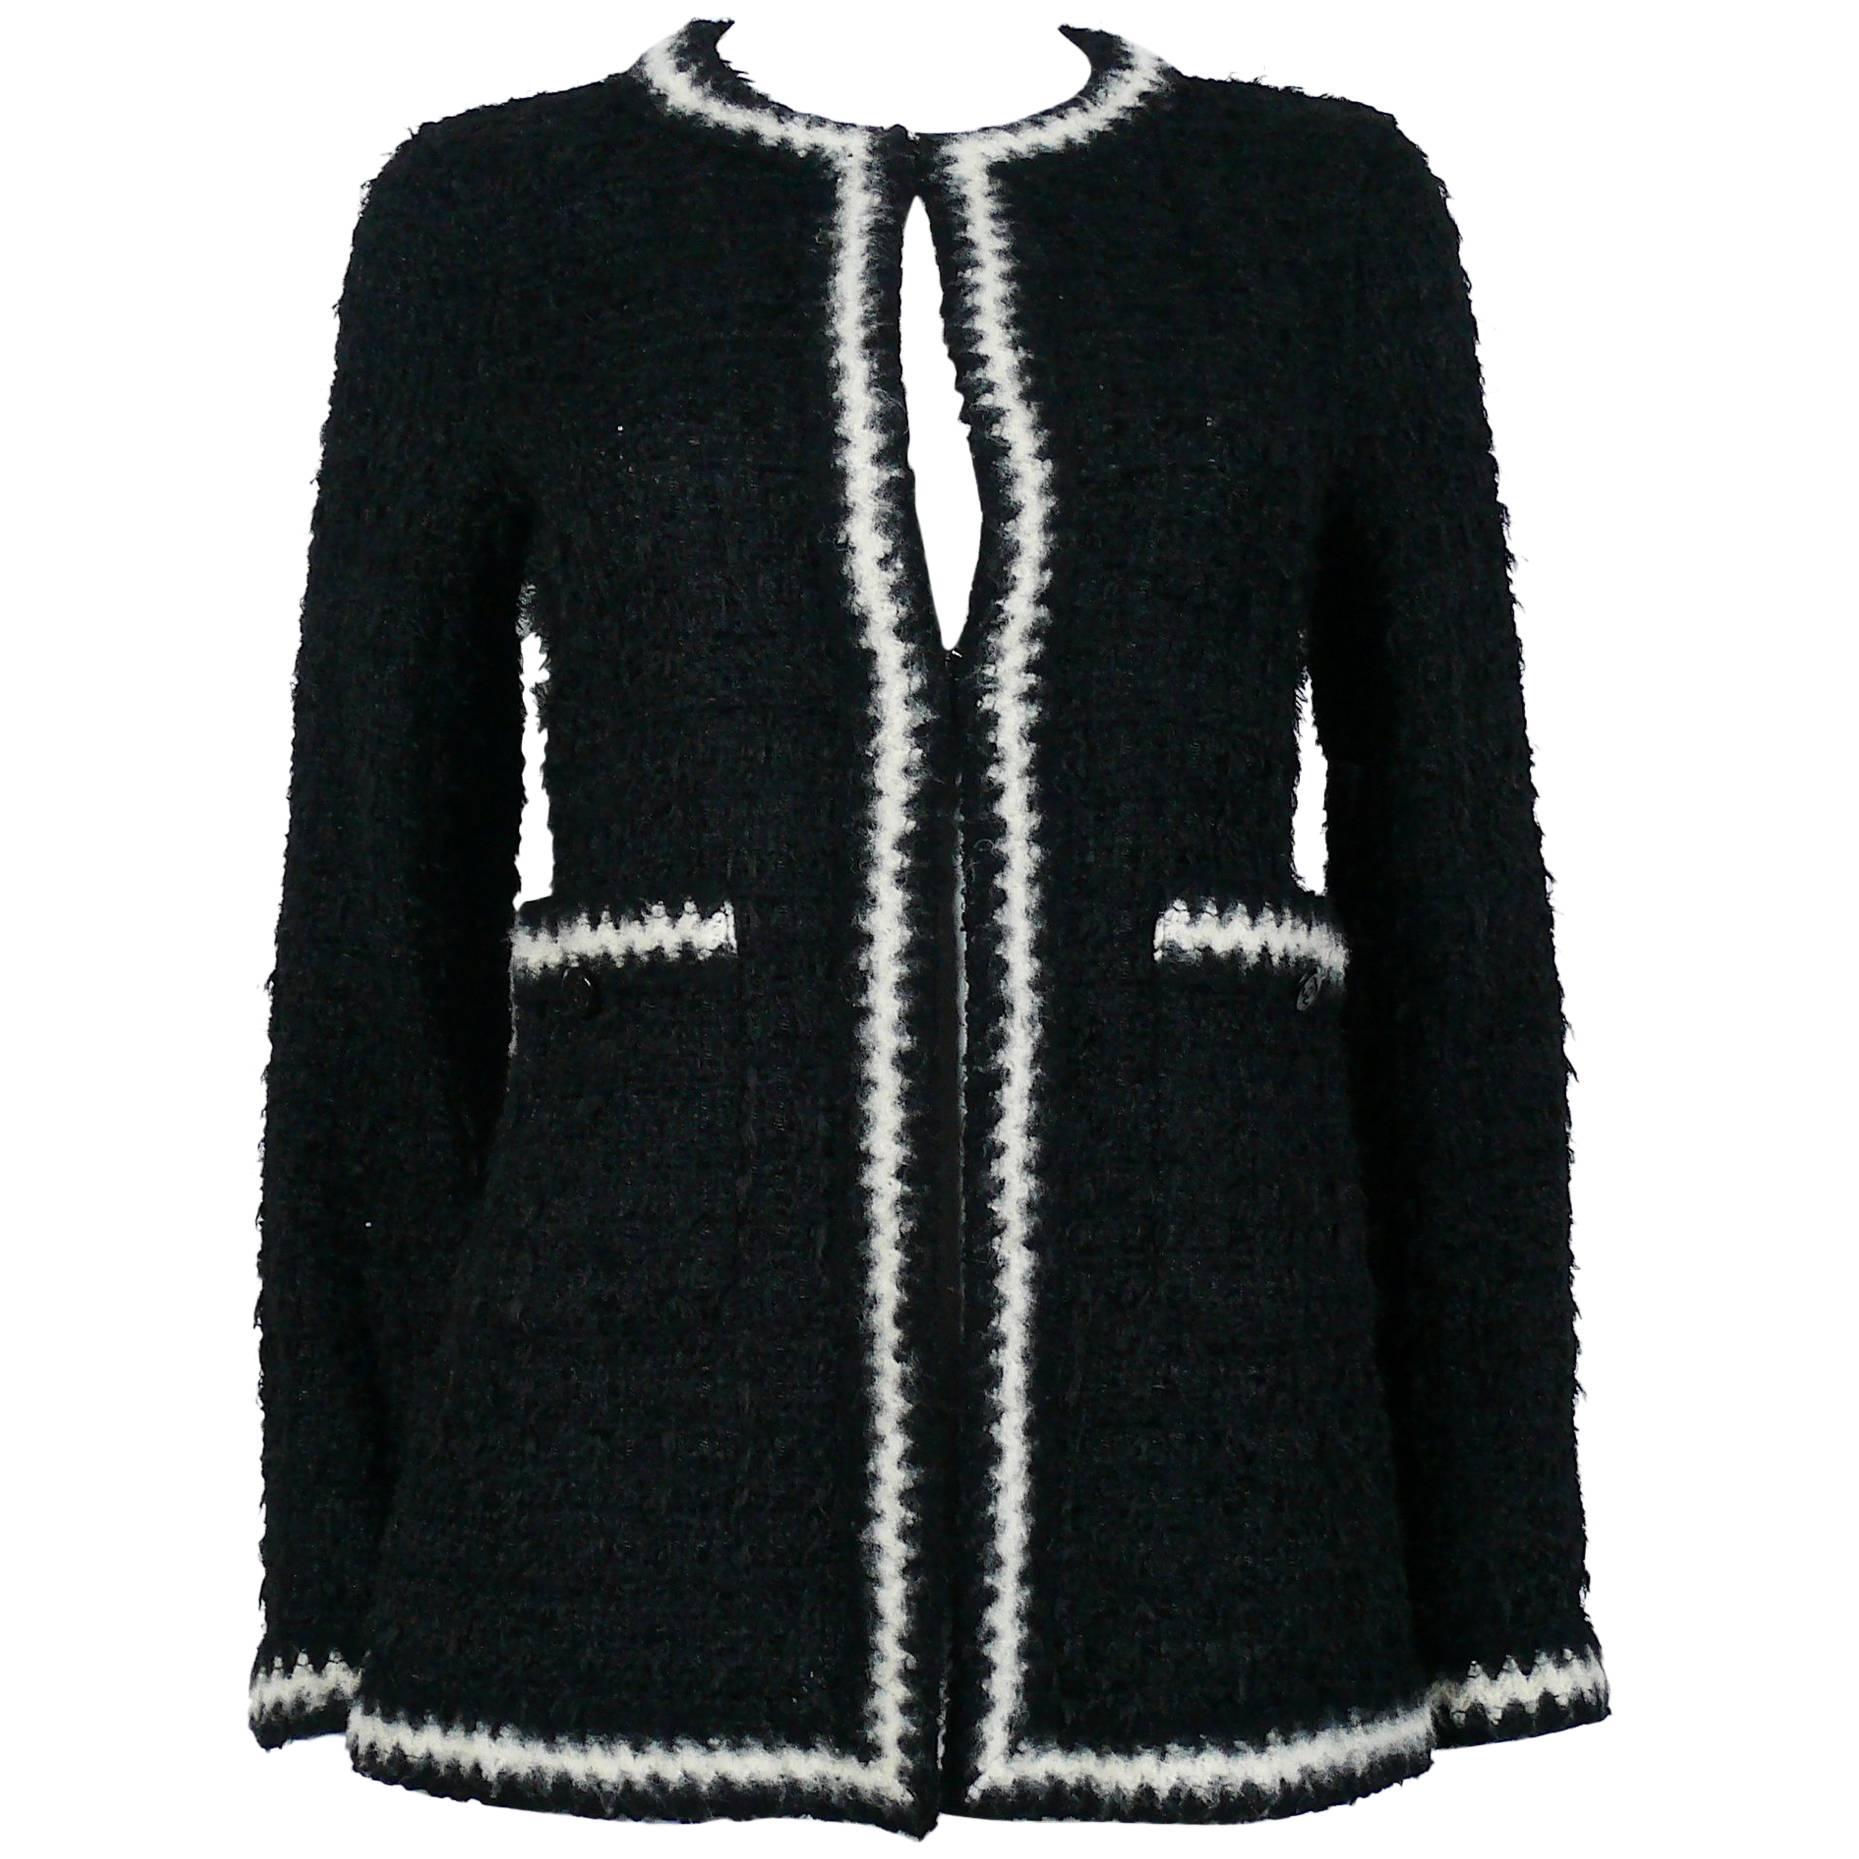 Chanel Vintage Fall 1998 Iconic Black & White Trim Boucle Cardigan Jacket